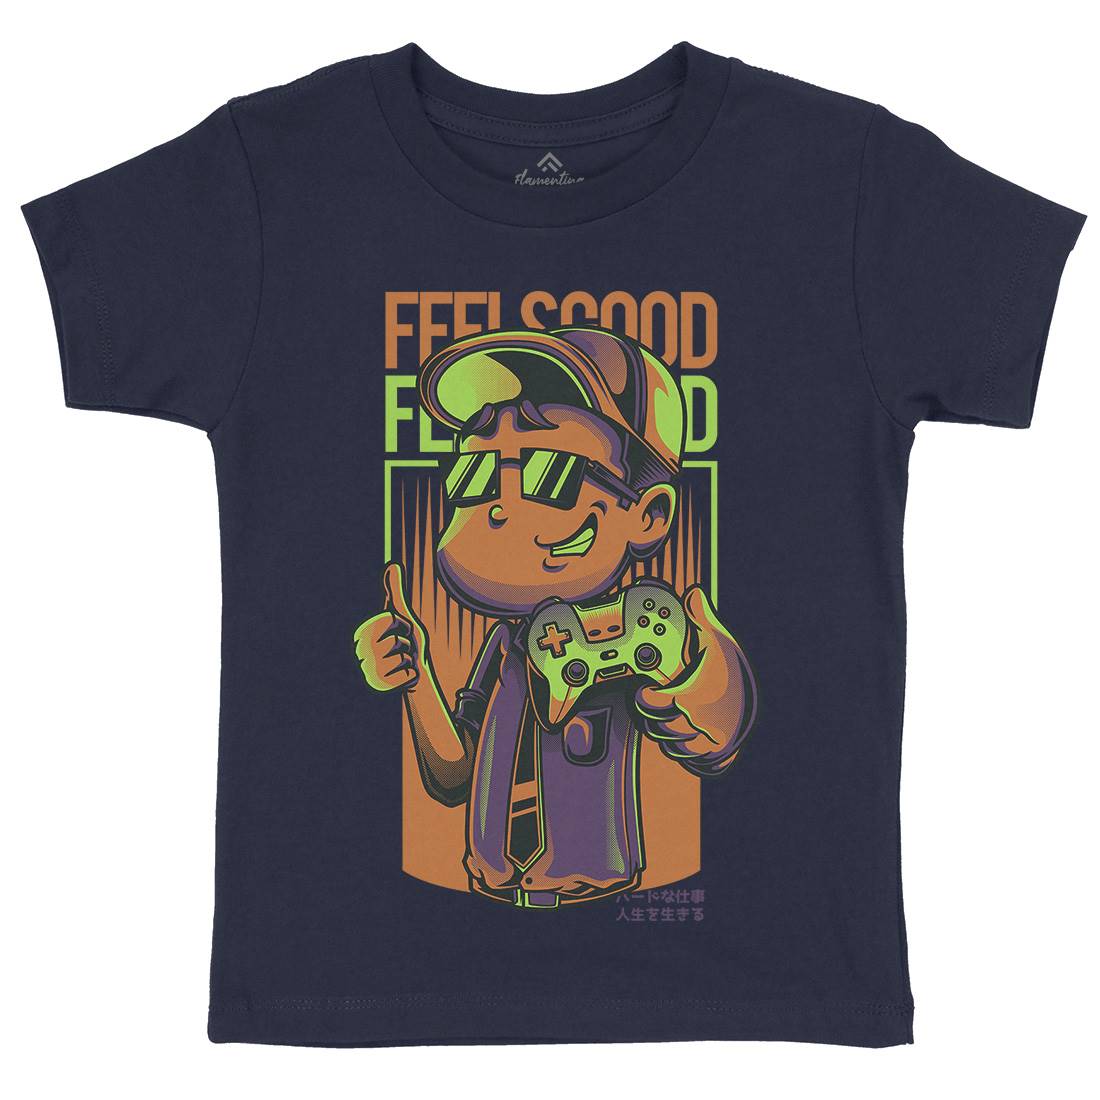 Feels Good Kids Crew Neck T-Shirt Geek D773